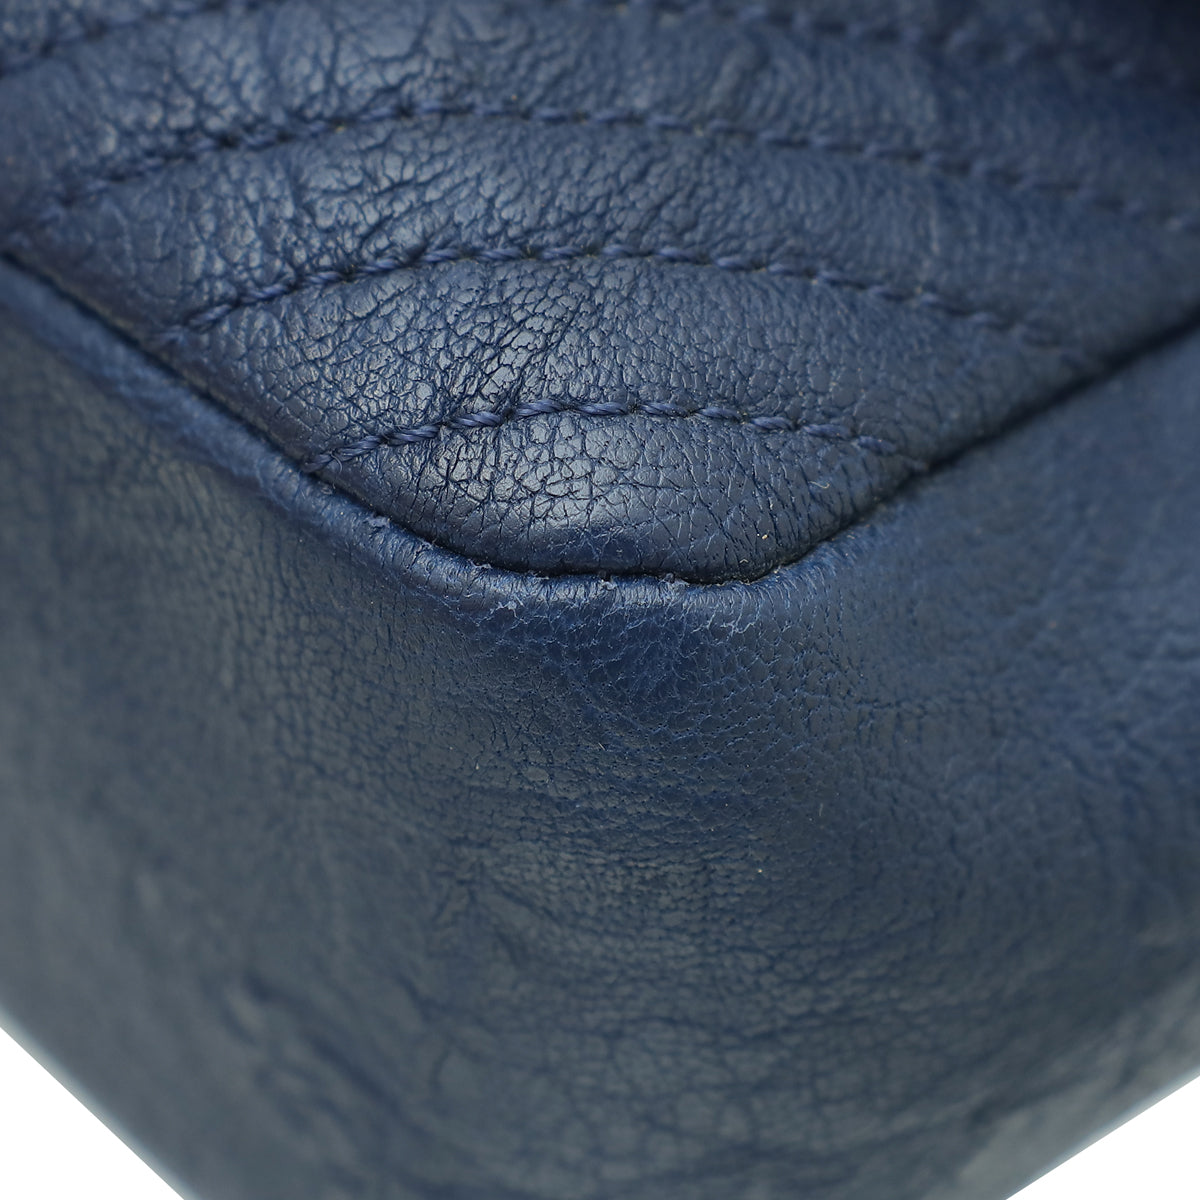 Chanel Blue Surpique Flap Medium Bag